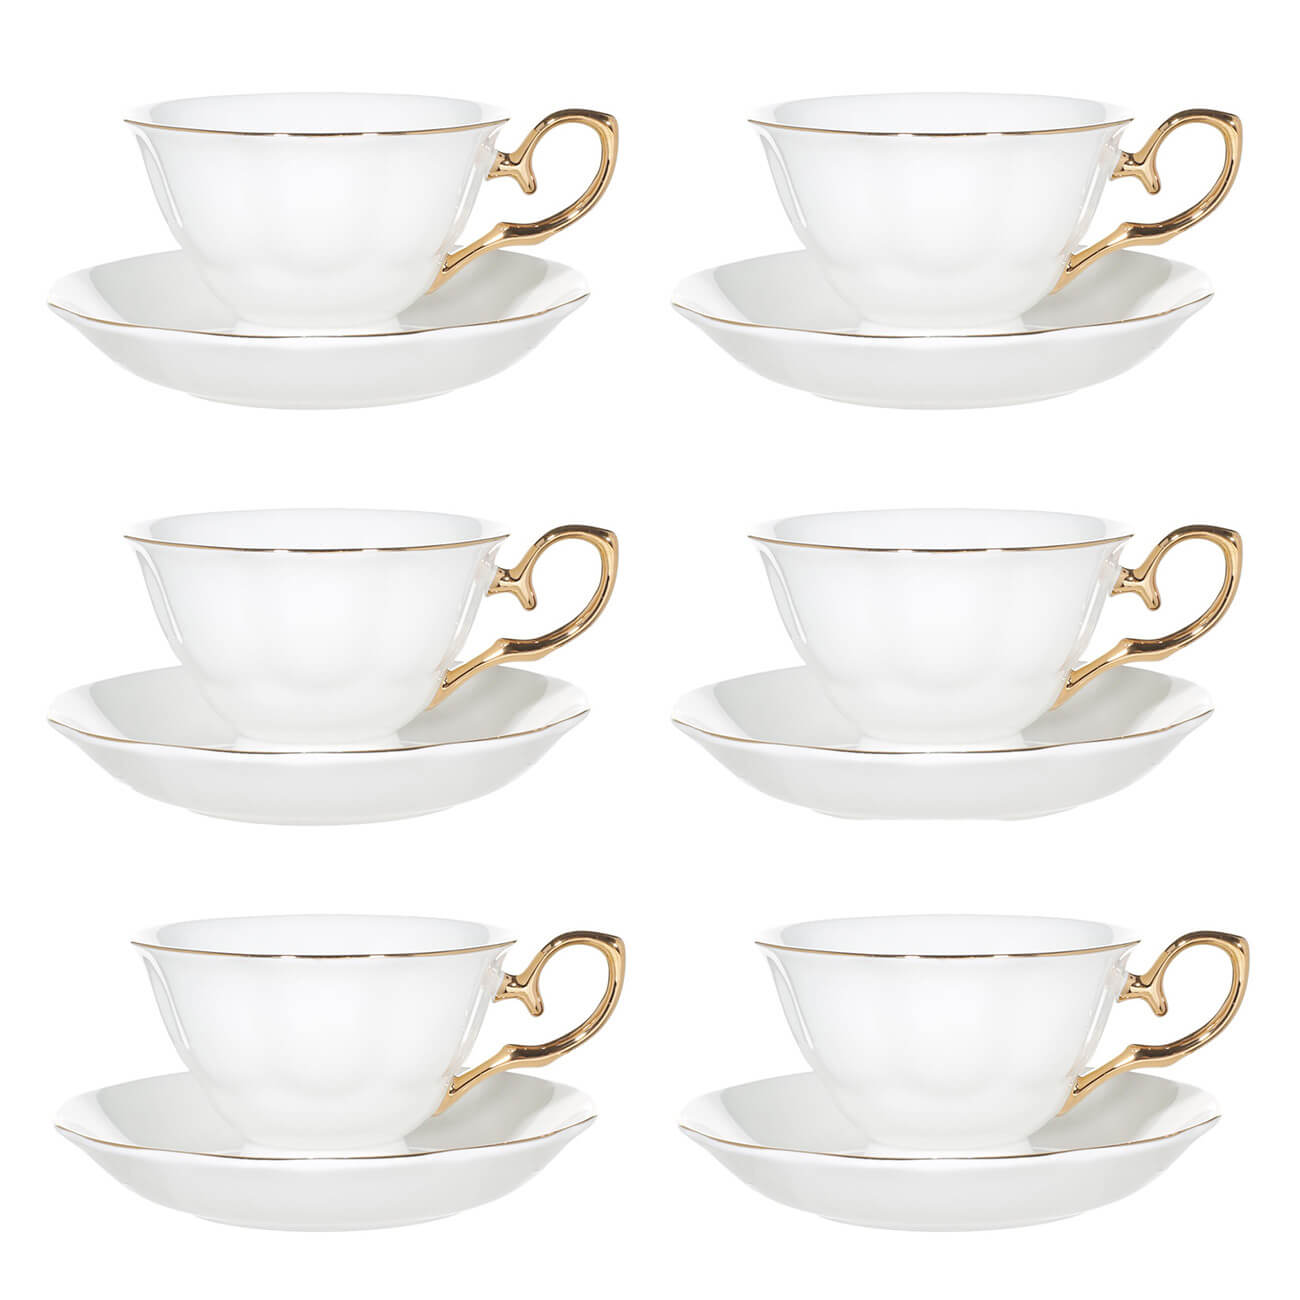 Пара чайная, 6 перс, 12 пр, 180 мл, фарфор F, бело-золотистая, Premium Gold ложка чайная be happy flora алина